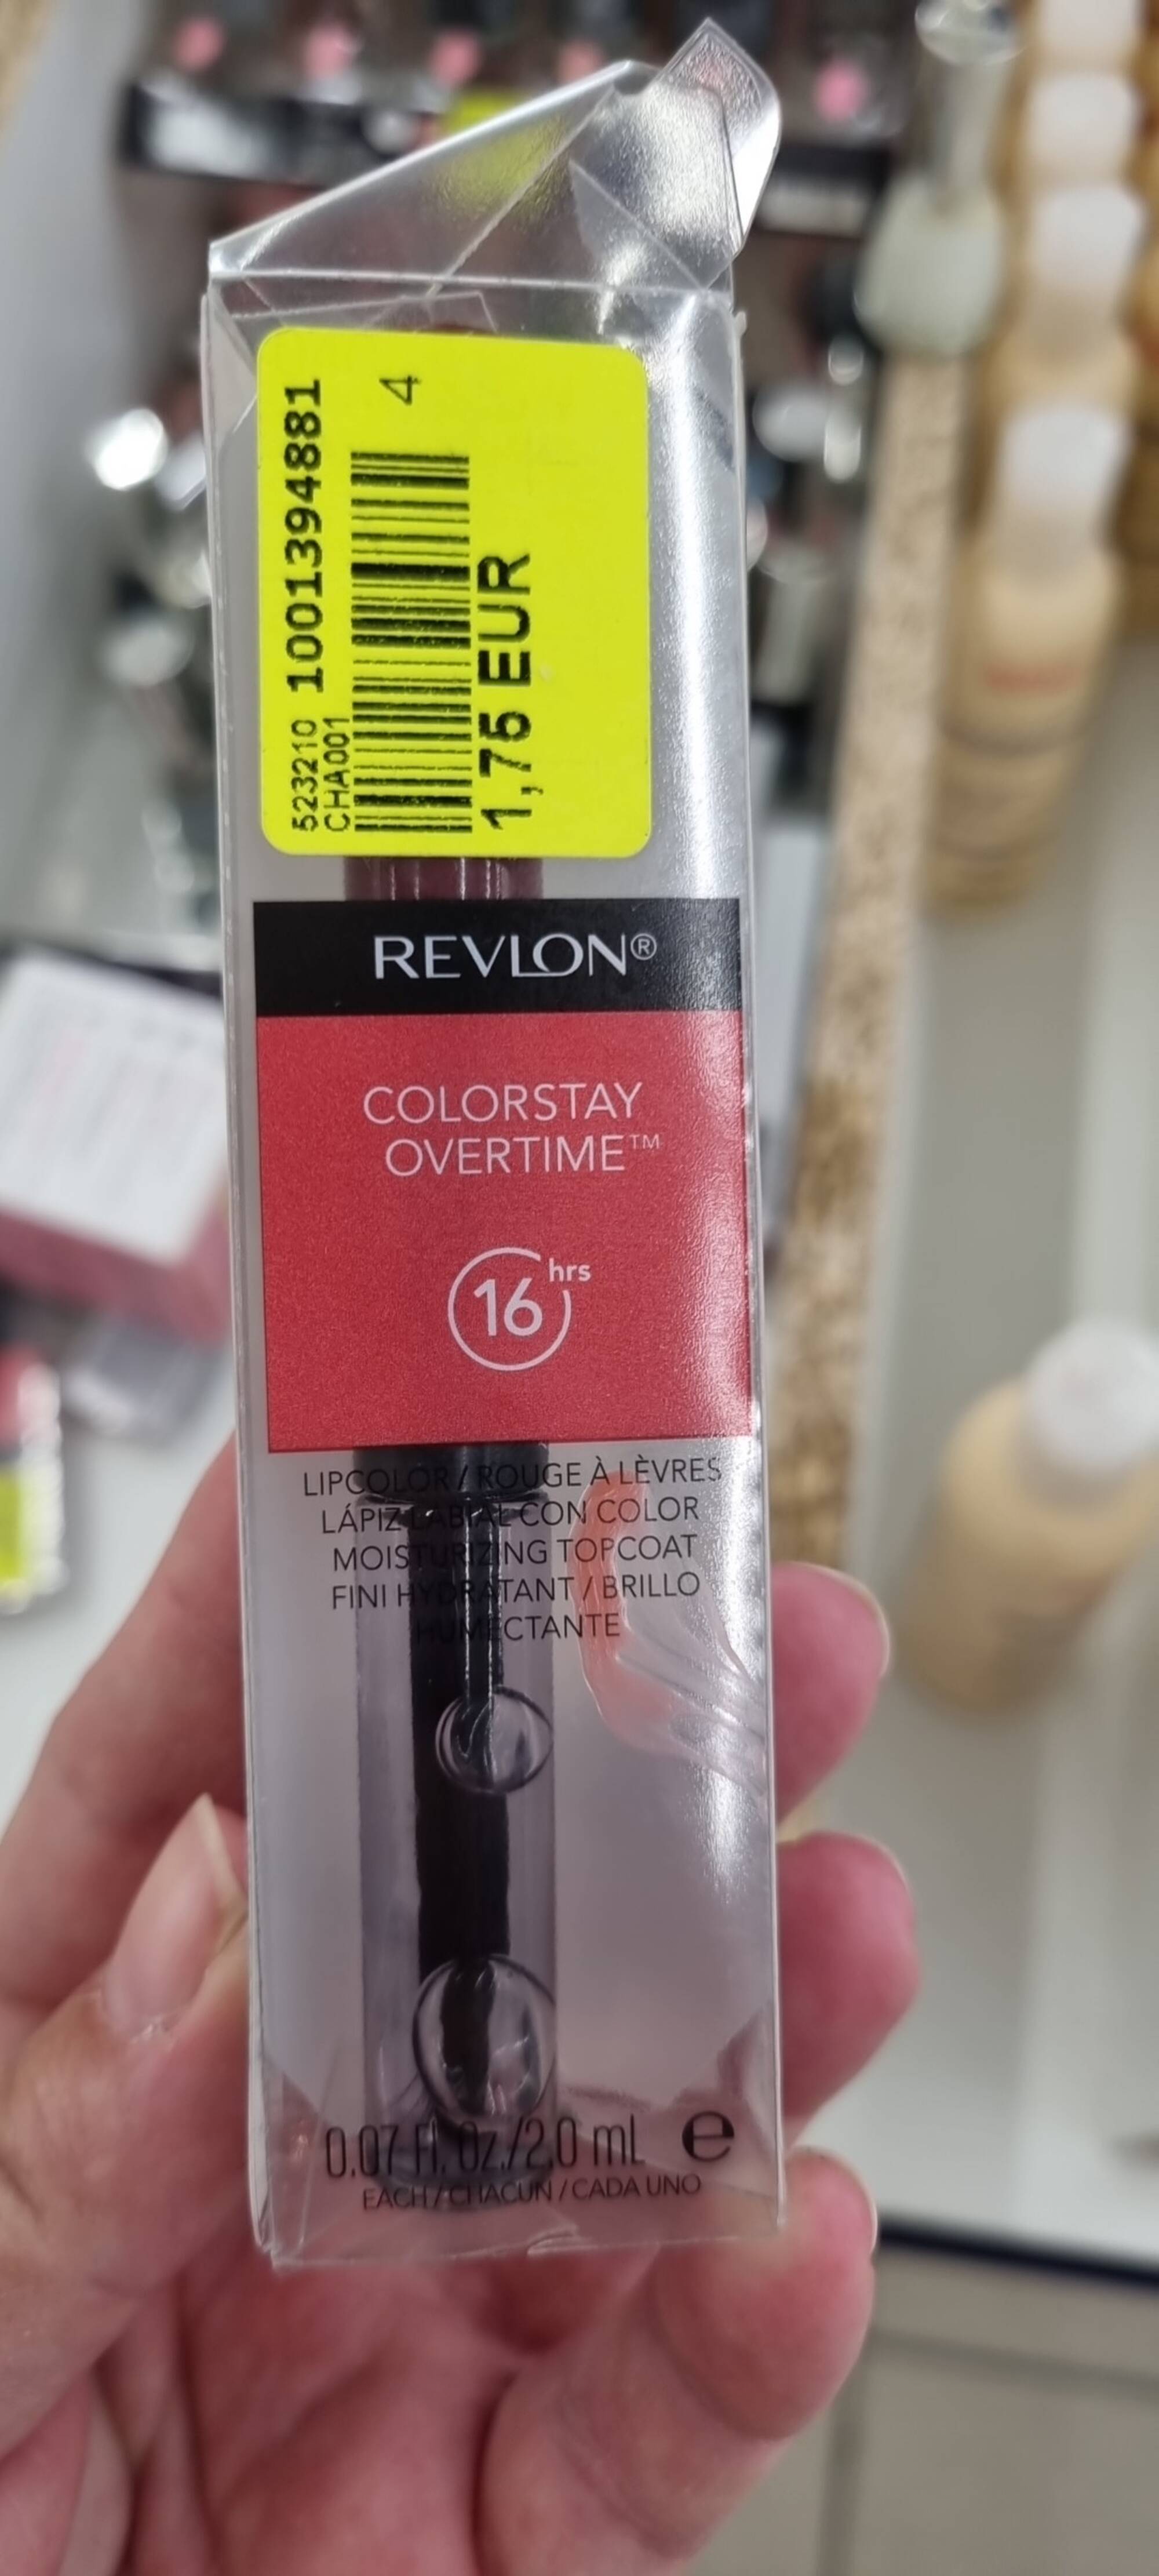 REVLON - Colorstay Overtime - Rouge à lèvres 16hrs